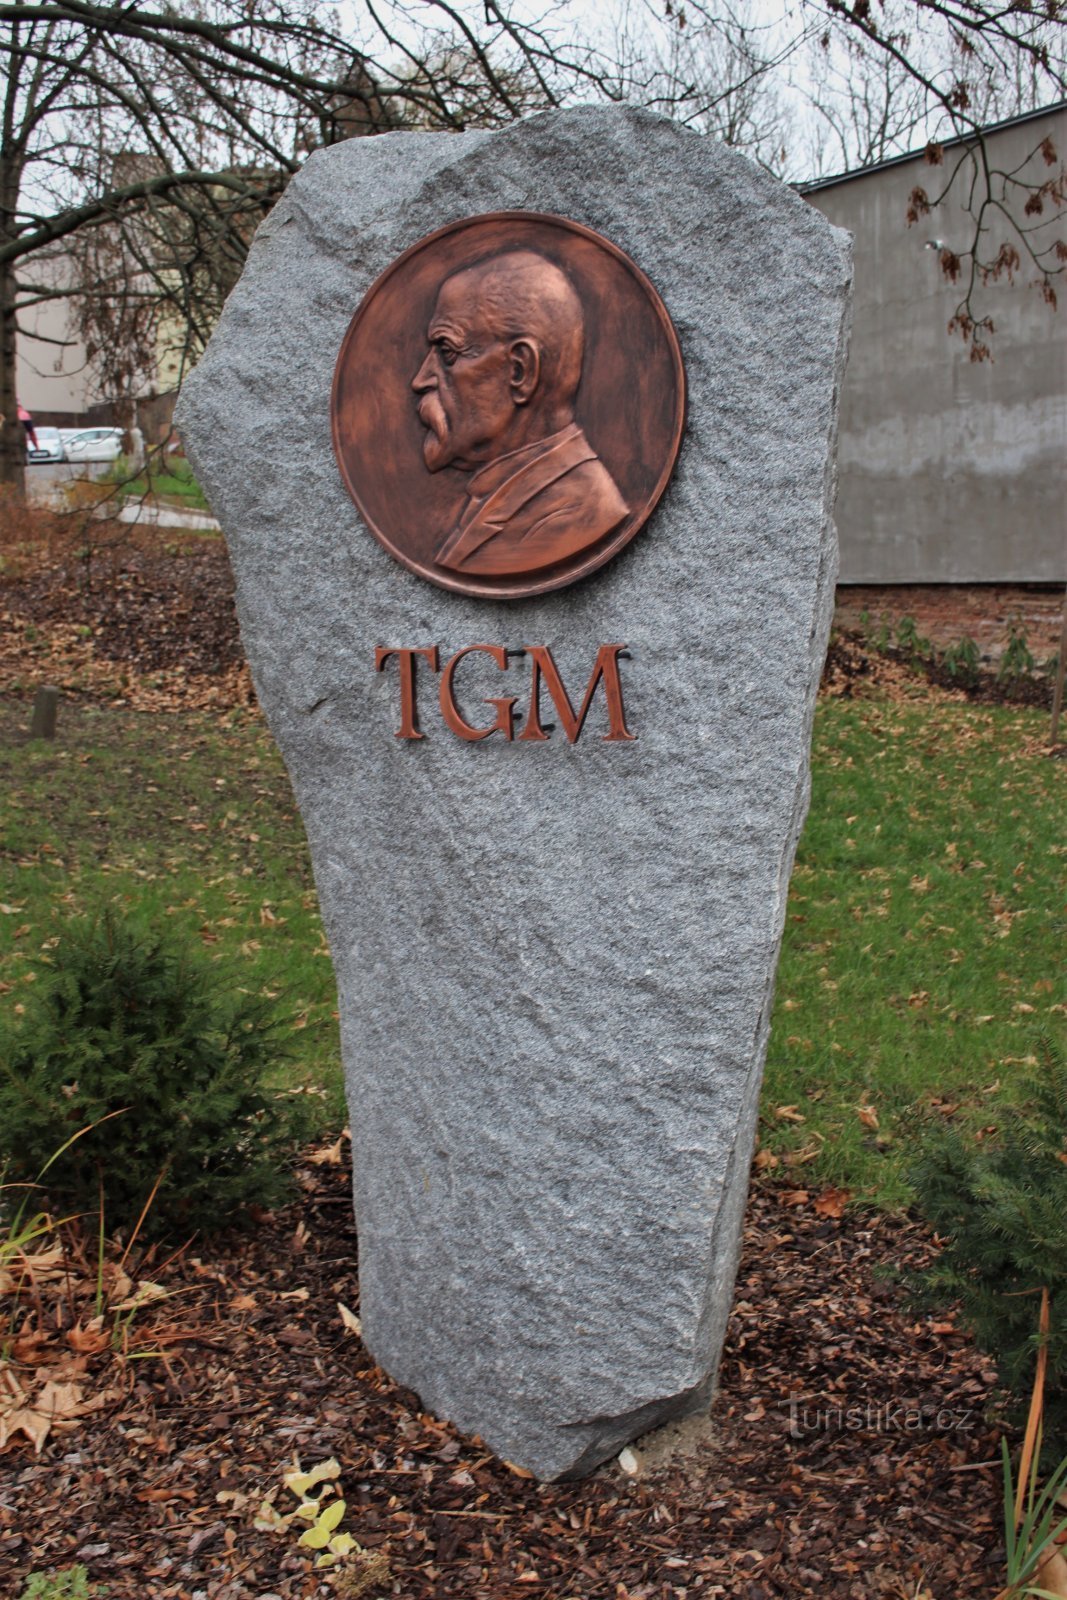 Ústí nad Orlicí - relieve con retrato de TGM